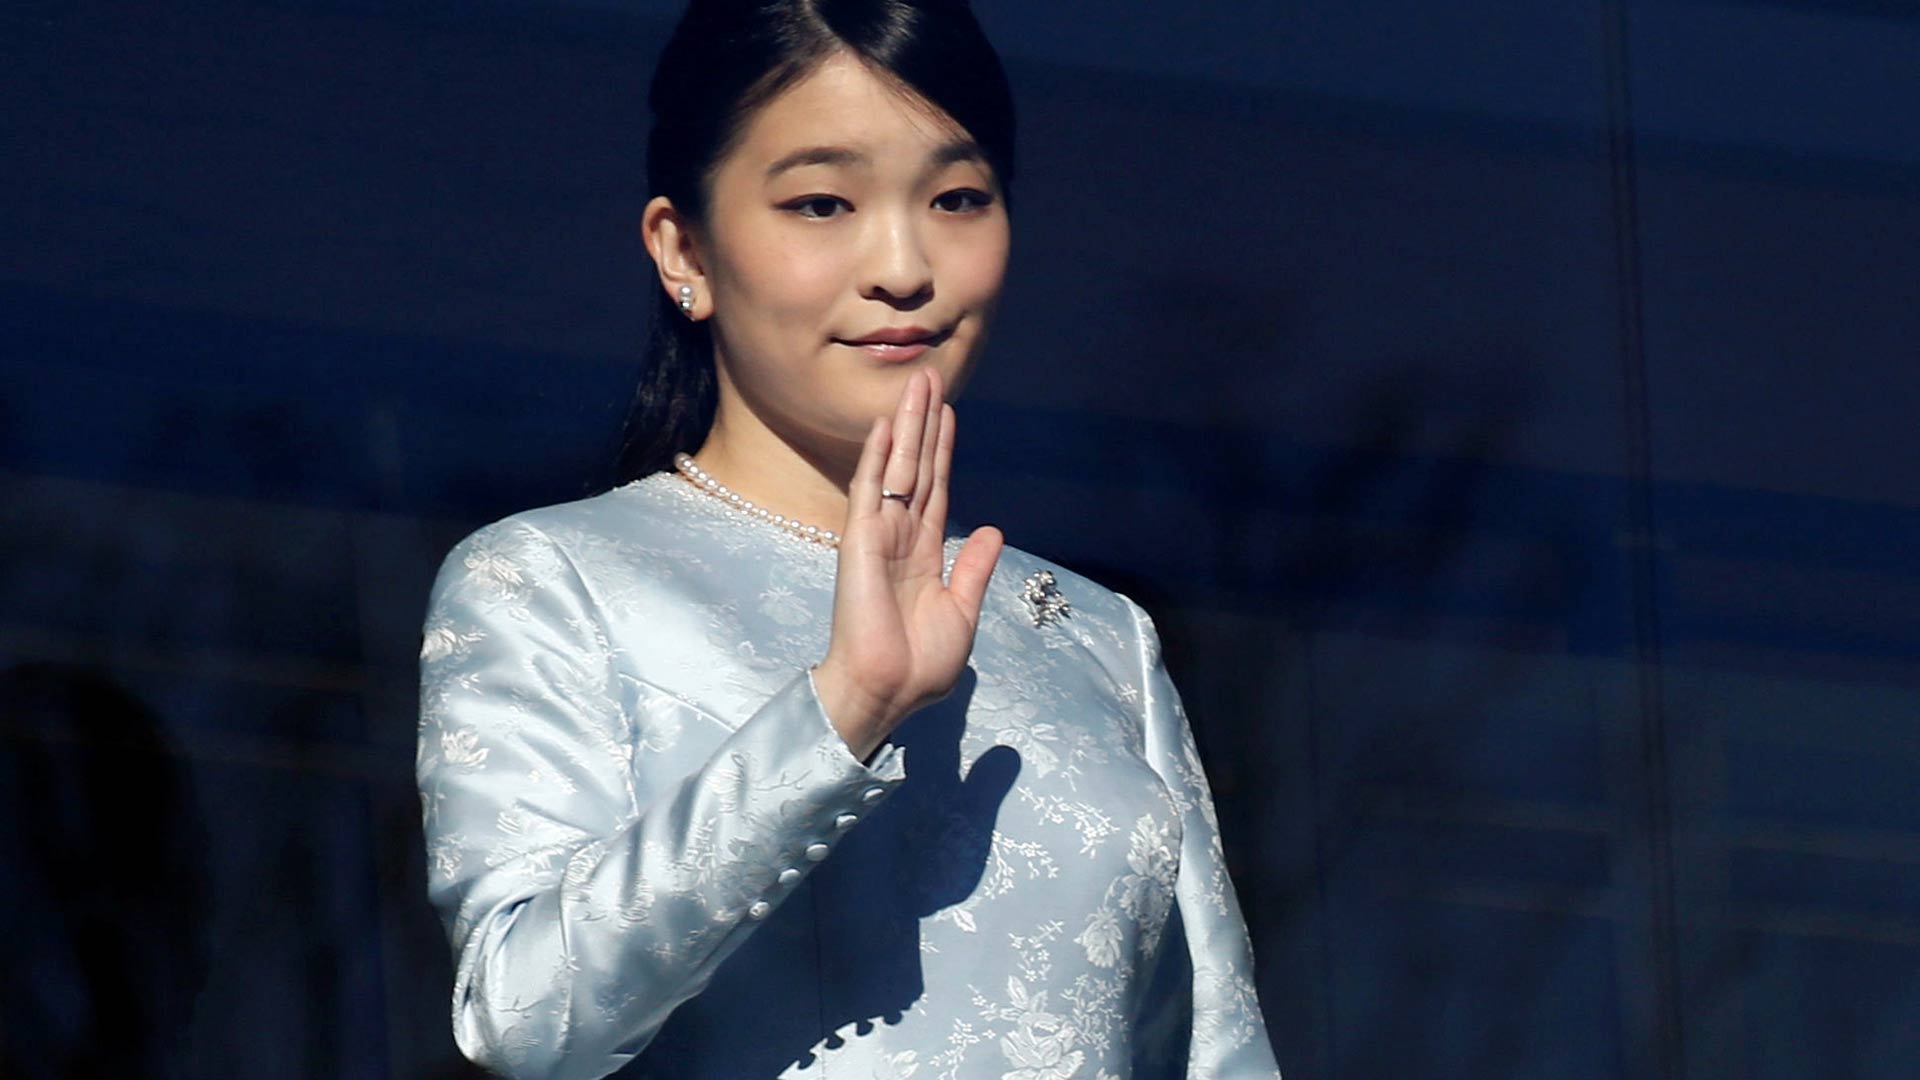 La princesa Mako de Japón retrasa su boda con un plebeyo "por falta de tiempo"